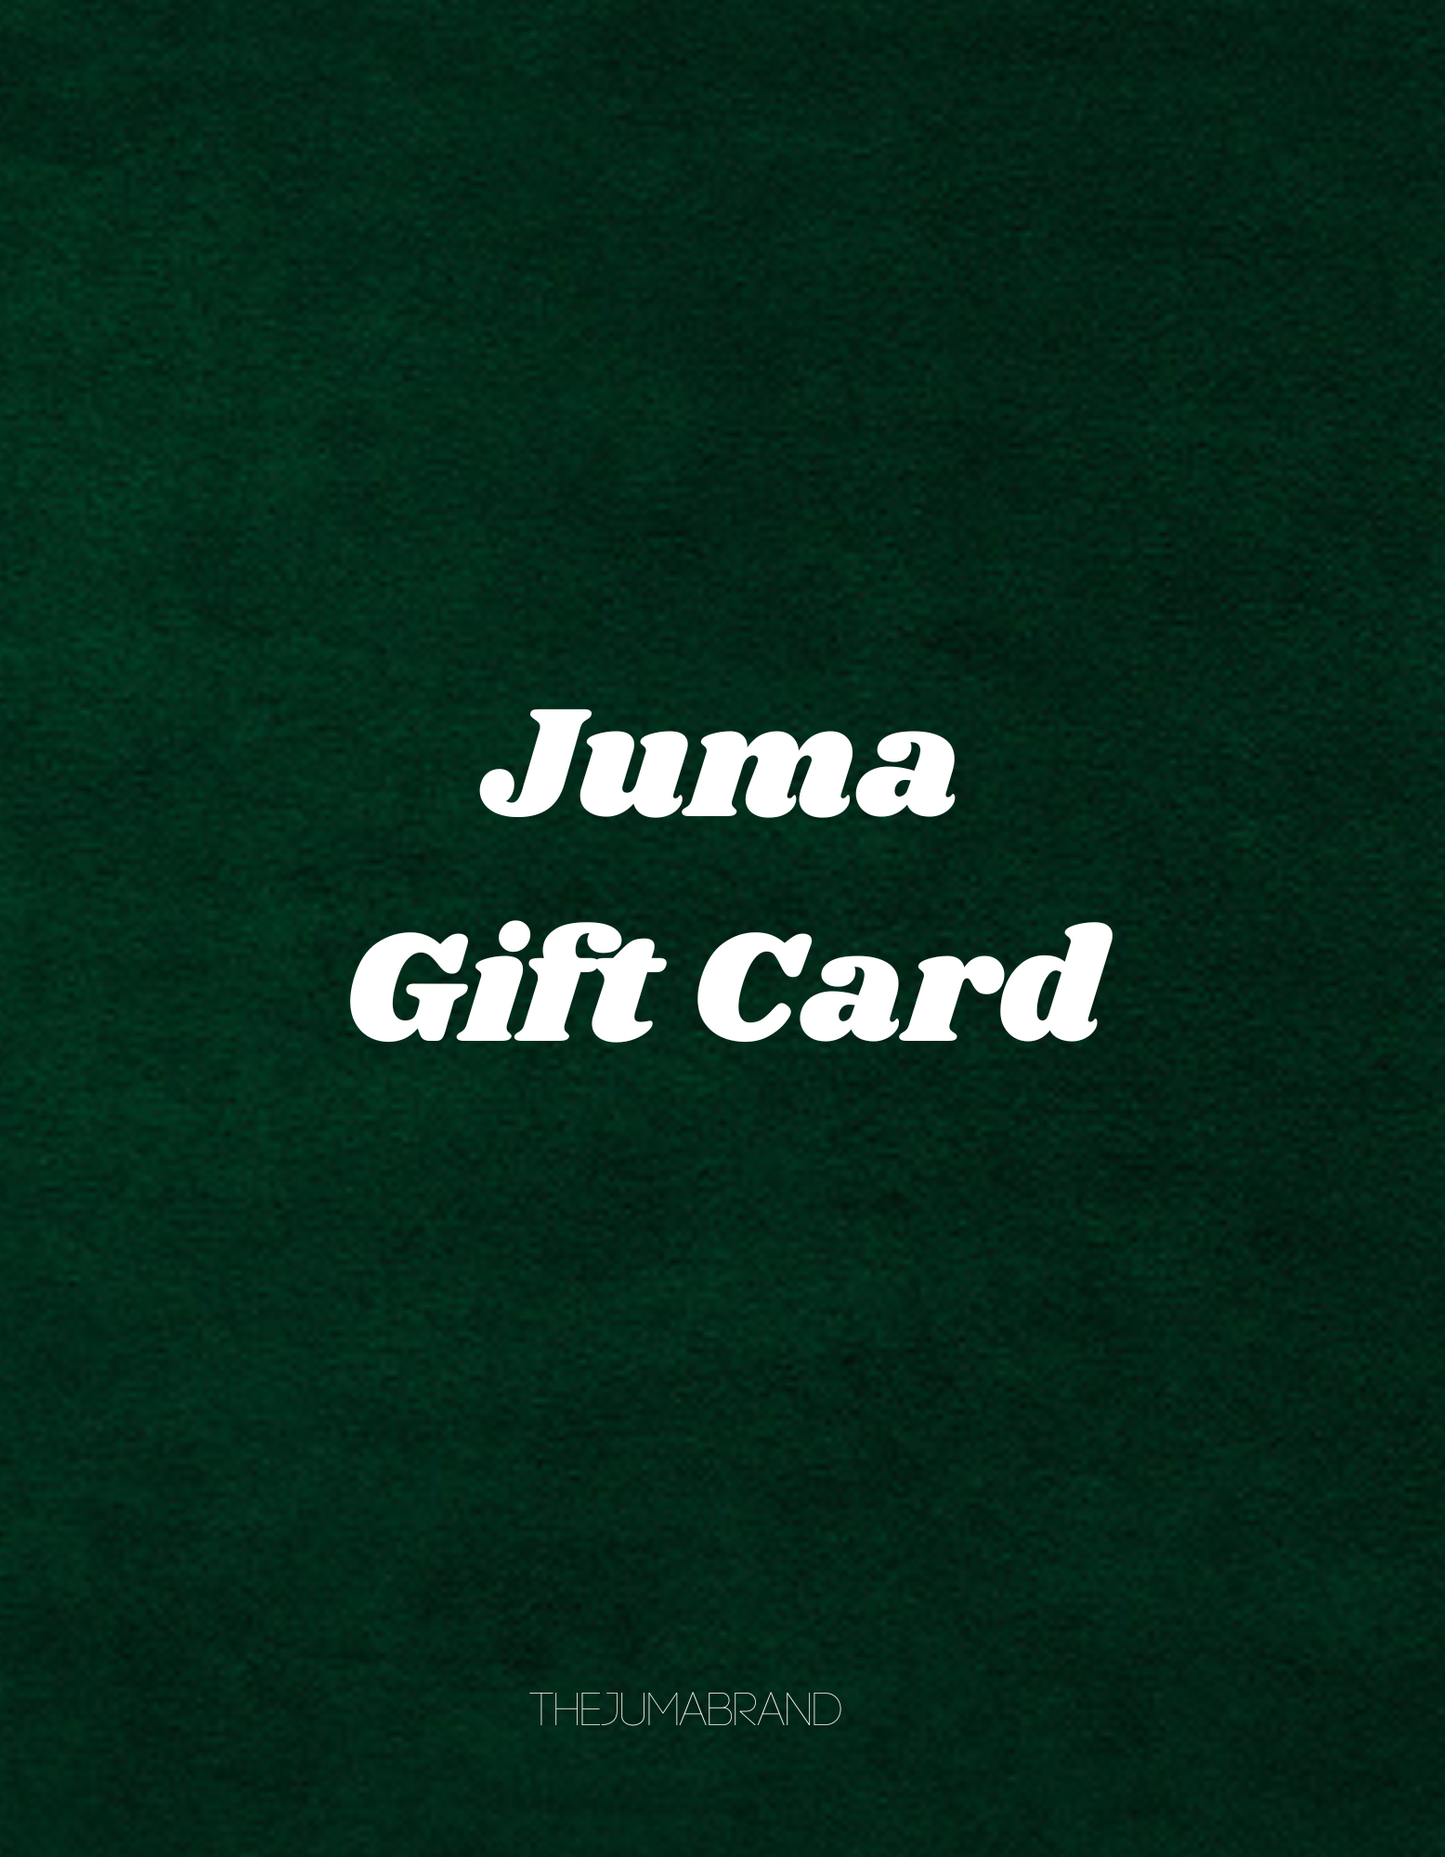 JUMA GIFT CARD